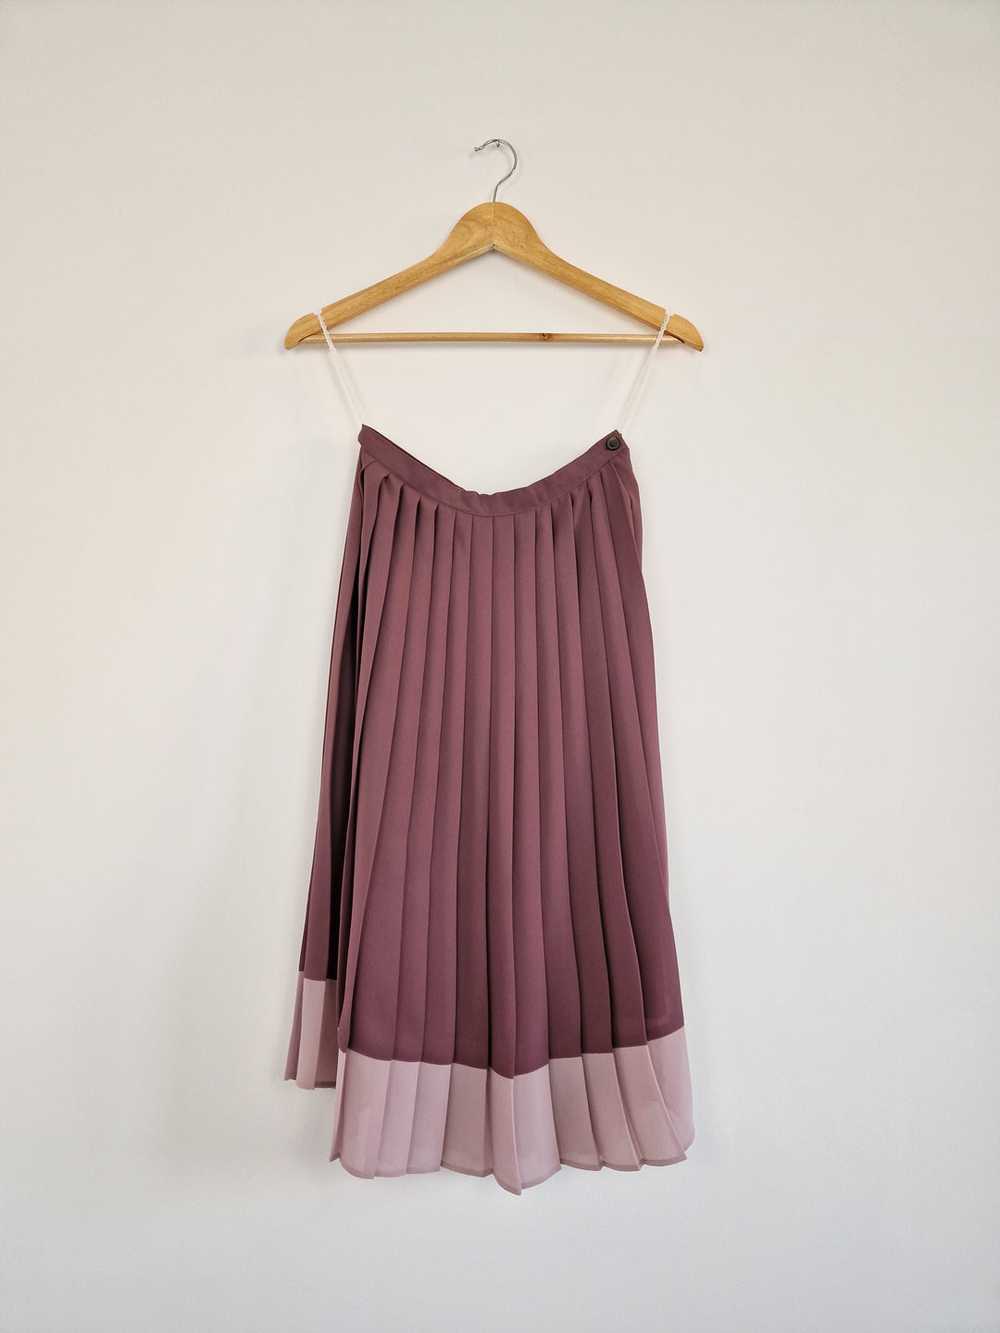 Vintage Gina Bacconi skirt - image 5